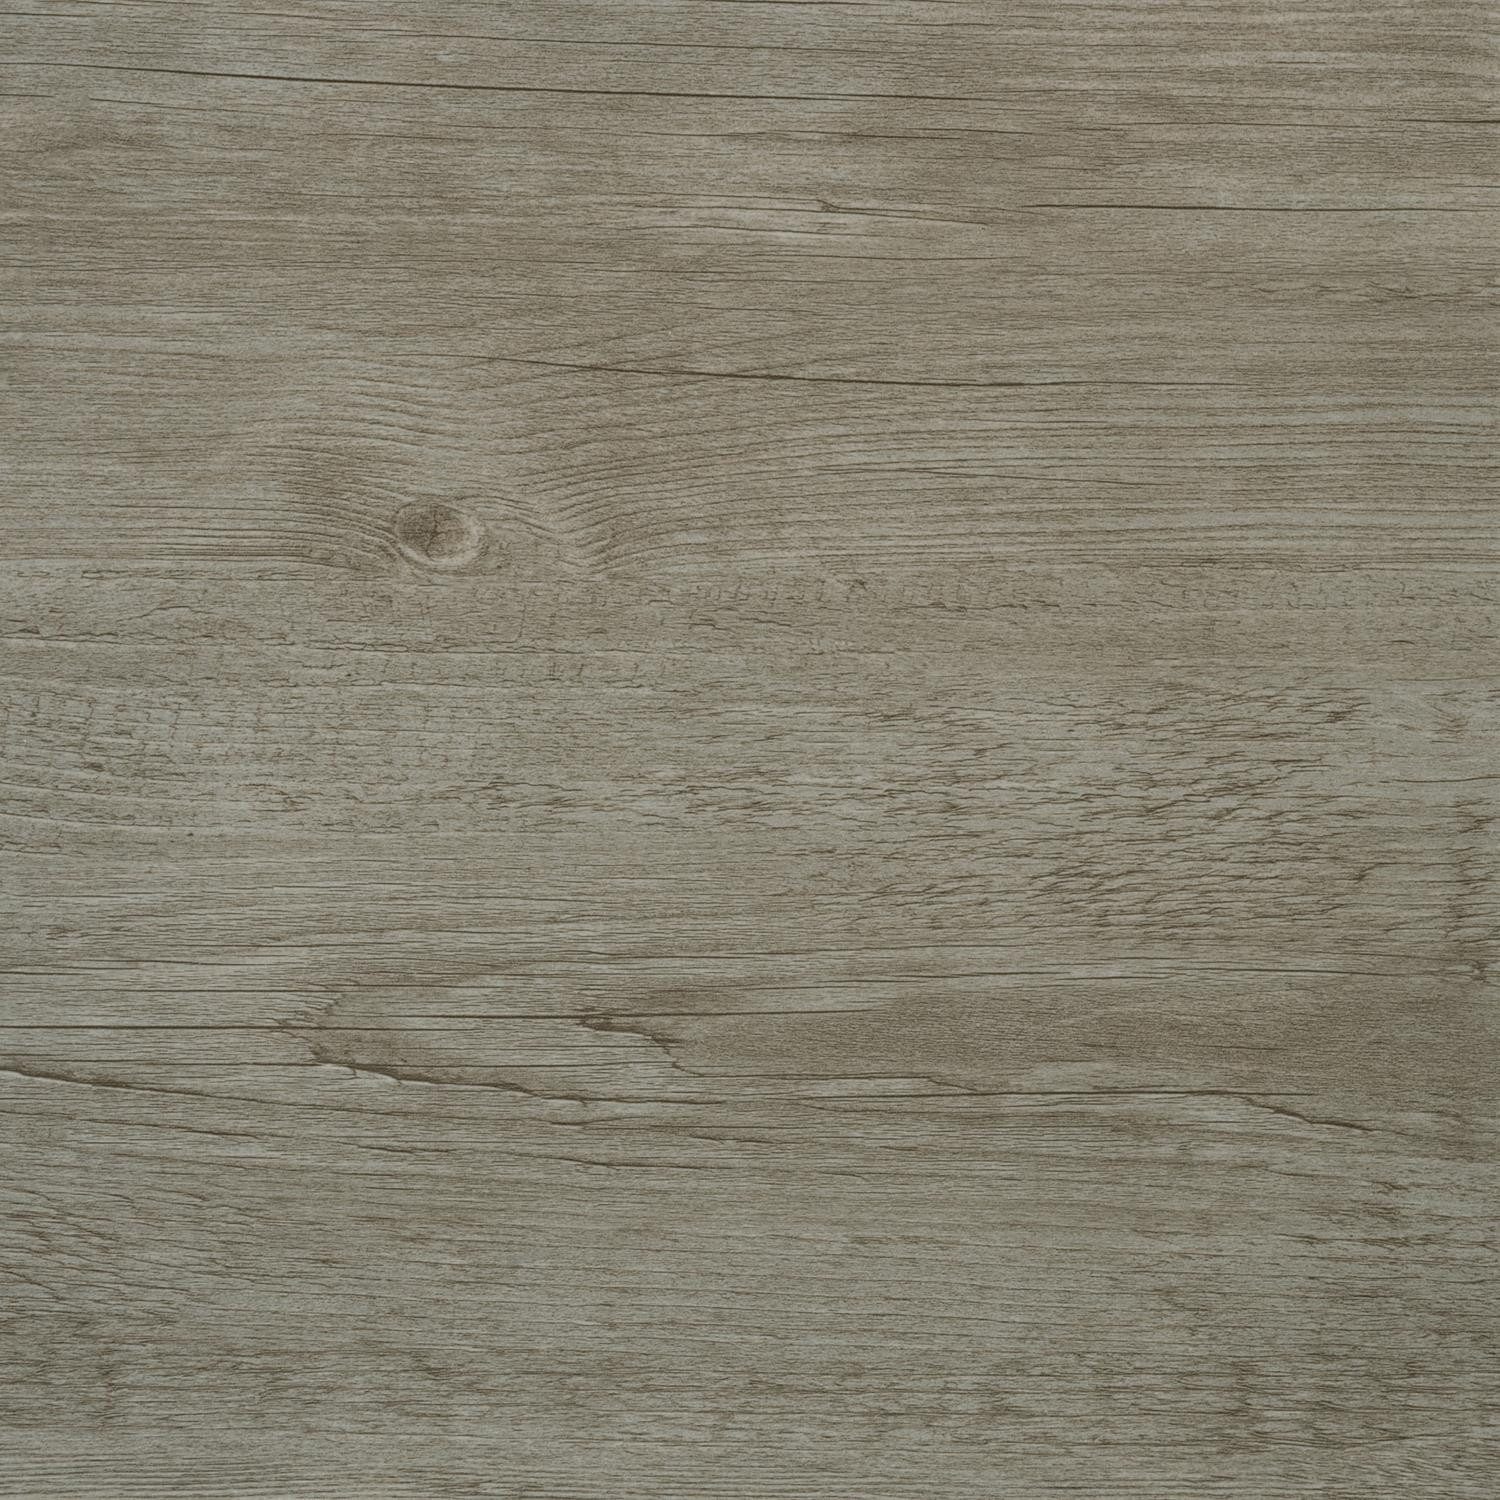 Self Adhesive Bathroom Floor Tiles
 Floor Tiles Self Adhesive Grey Wood Effect Vinyl Flooring